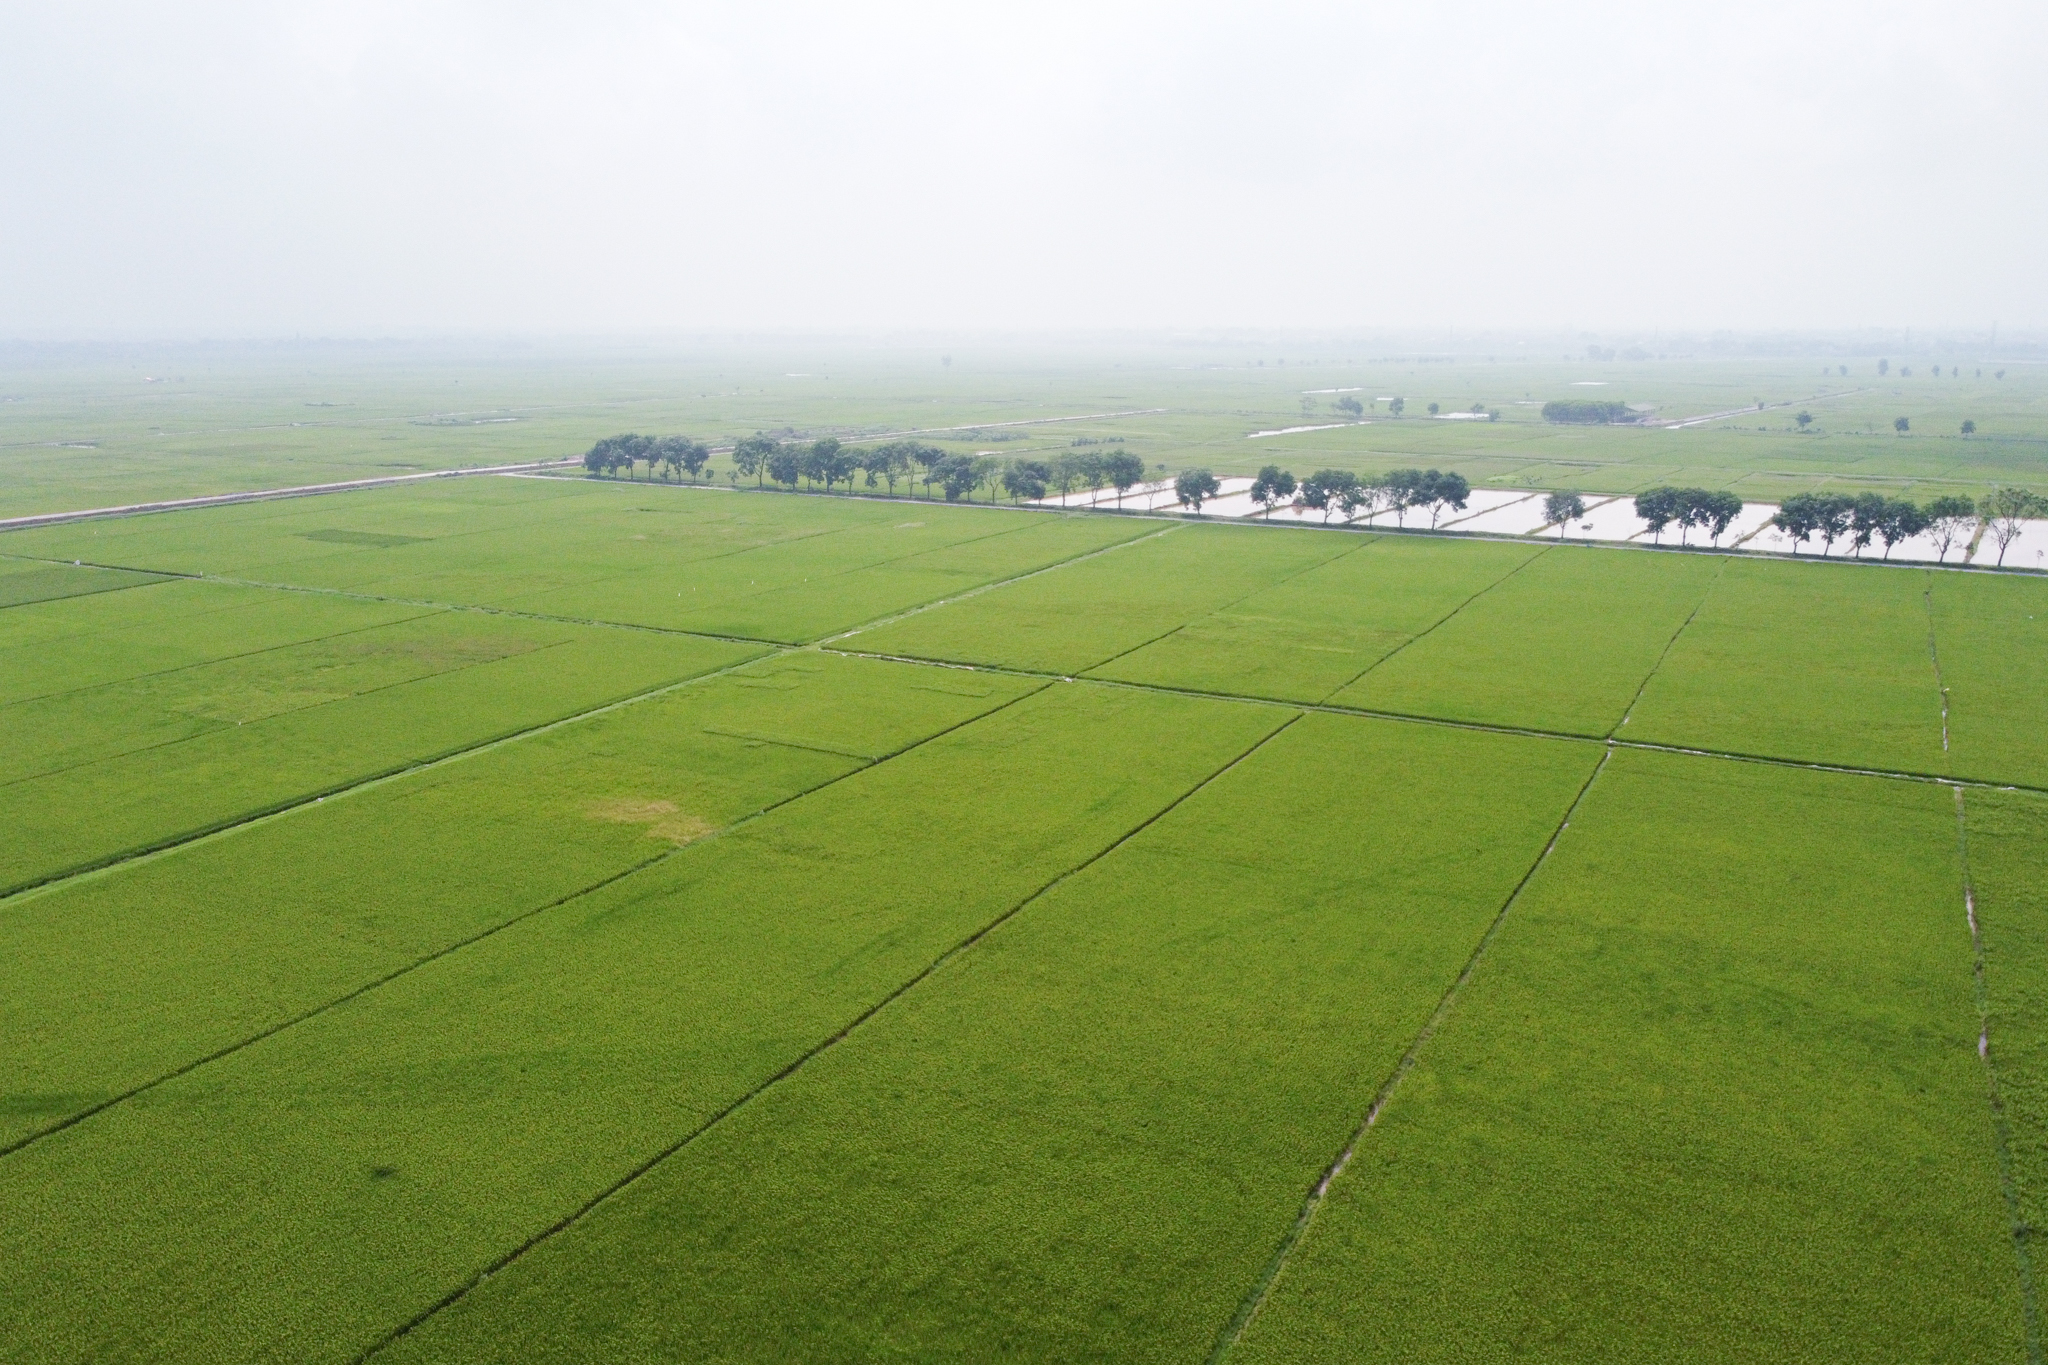 Canh tác lúa theo biện pháp SRI tại Hà Nội, giúp giảm chi phí đầu vào, giảm phát thải khí nhà kính. Ảnh: Tùng Đinh.